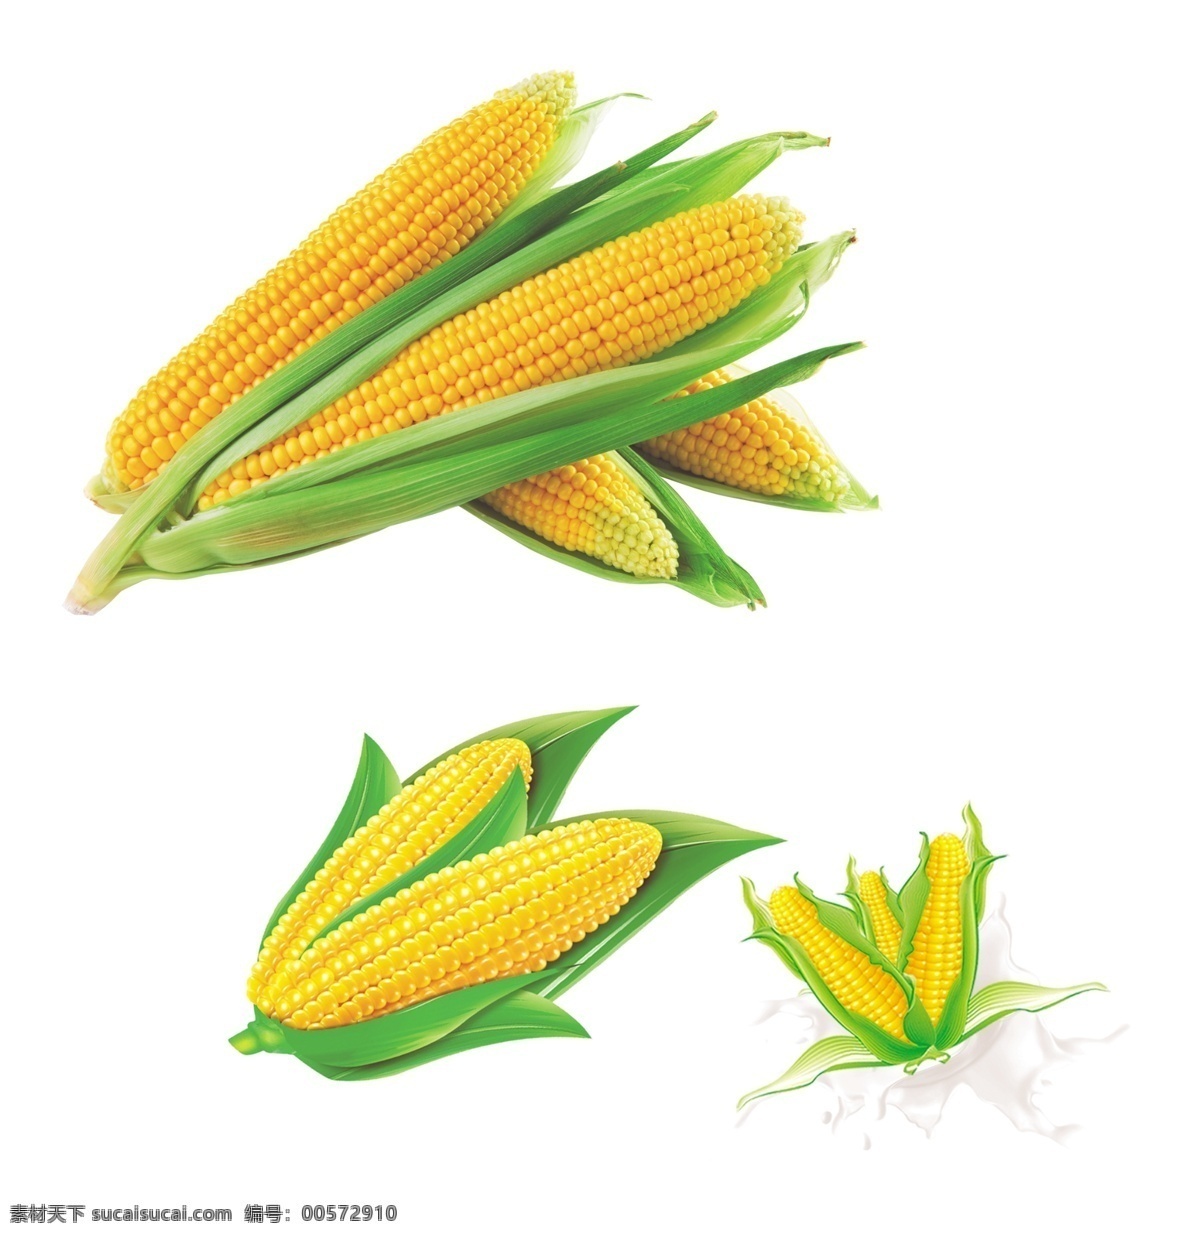 玉米 卡通玉米 玉米素材 玉米叶子 矢量玉米 矢量素材 绿色食品 农作物 米 玉米棒 甜玉米 包谷 苞米 棒子 玉米棒子 分层 源文件